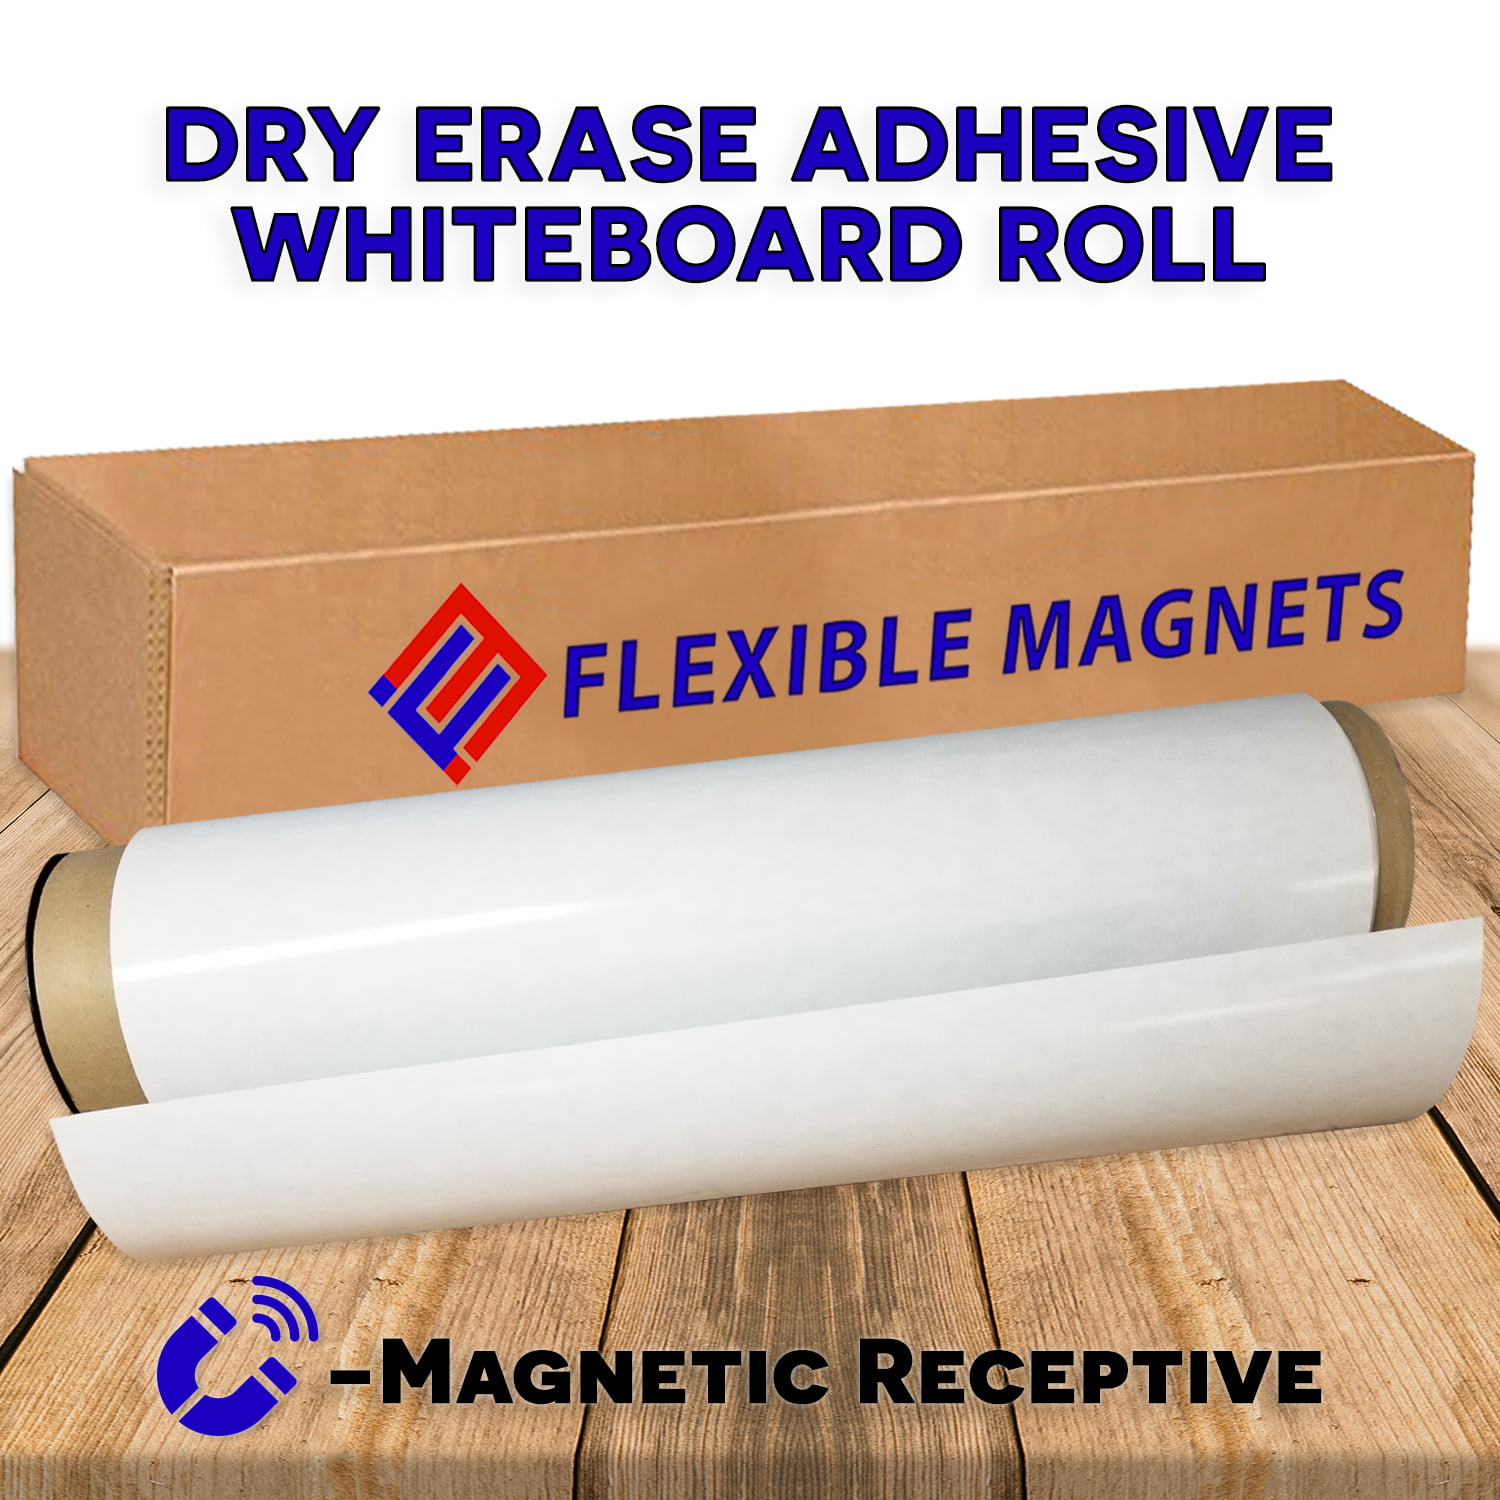 2x Whiteboard Marker Whiteboard Eraser Dry Wipe Cleaning Office School Learning 